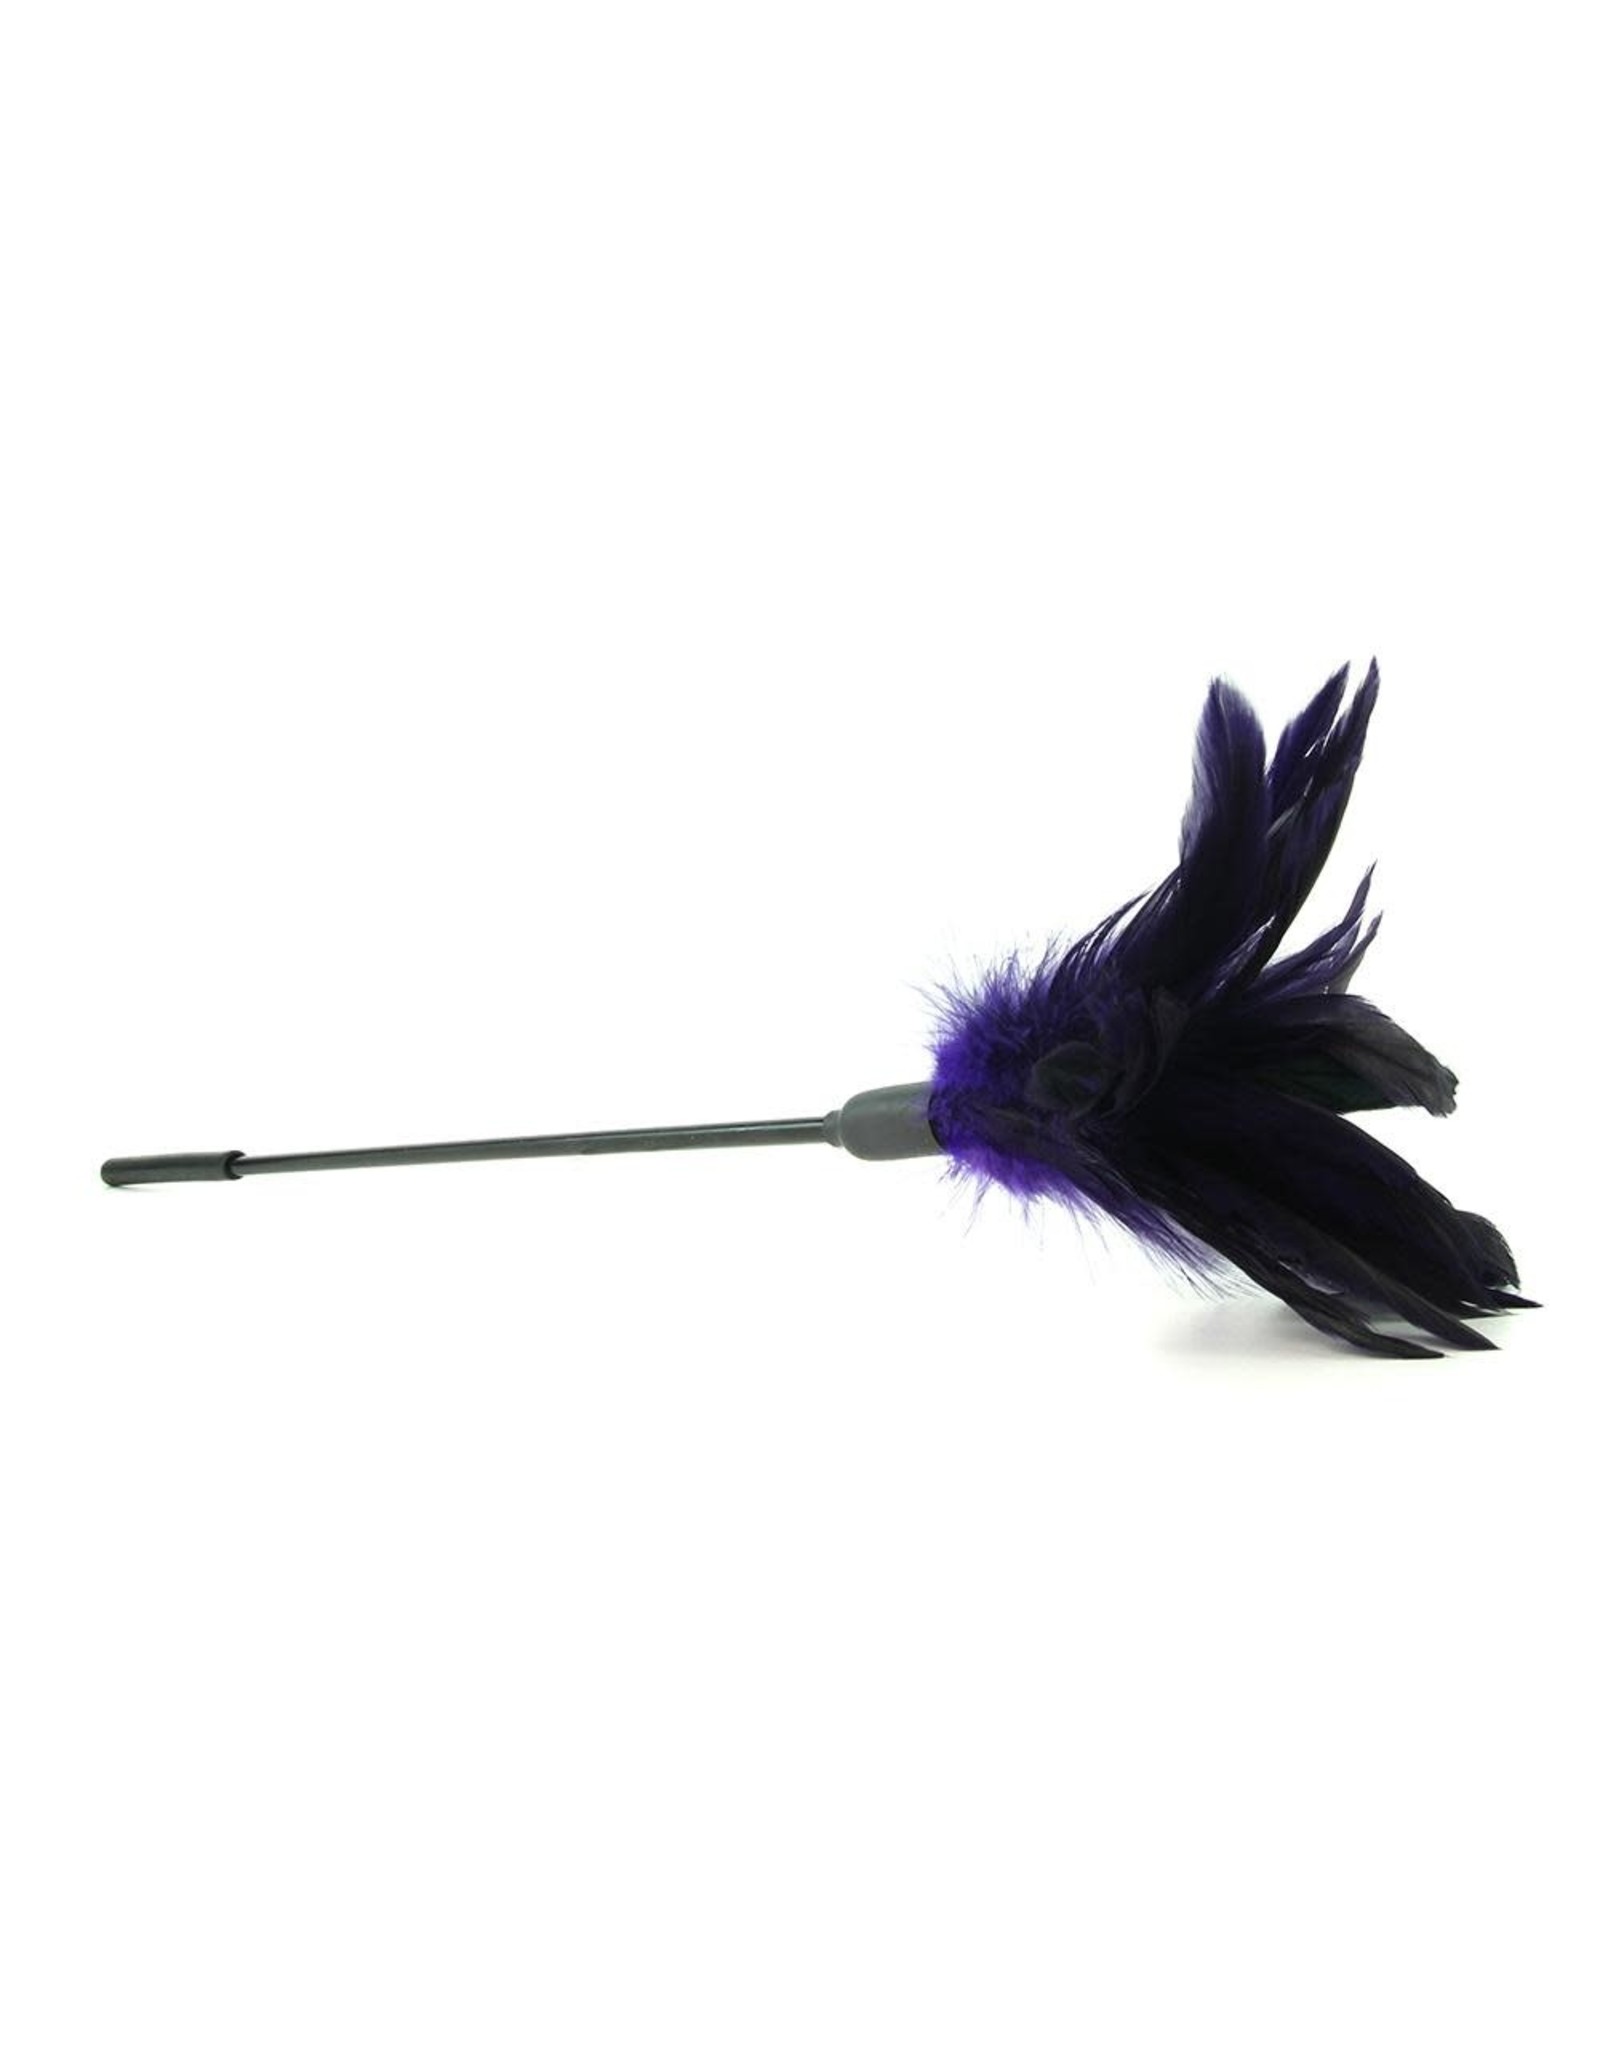 Sportsheets Starburst Feather Purple